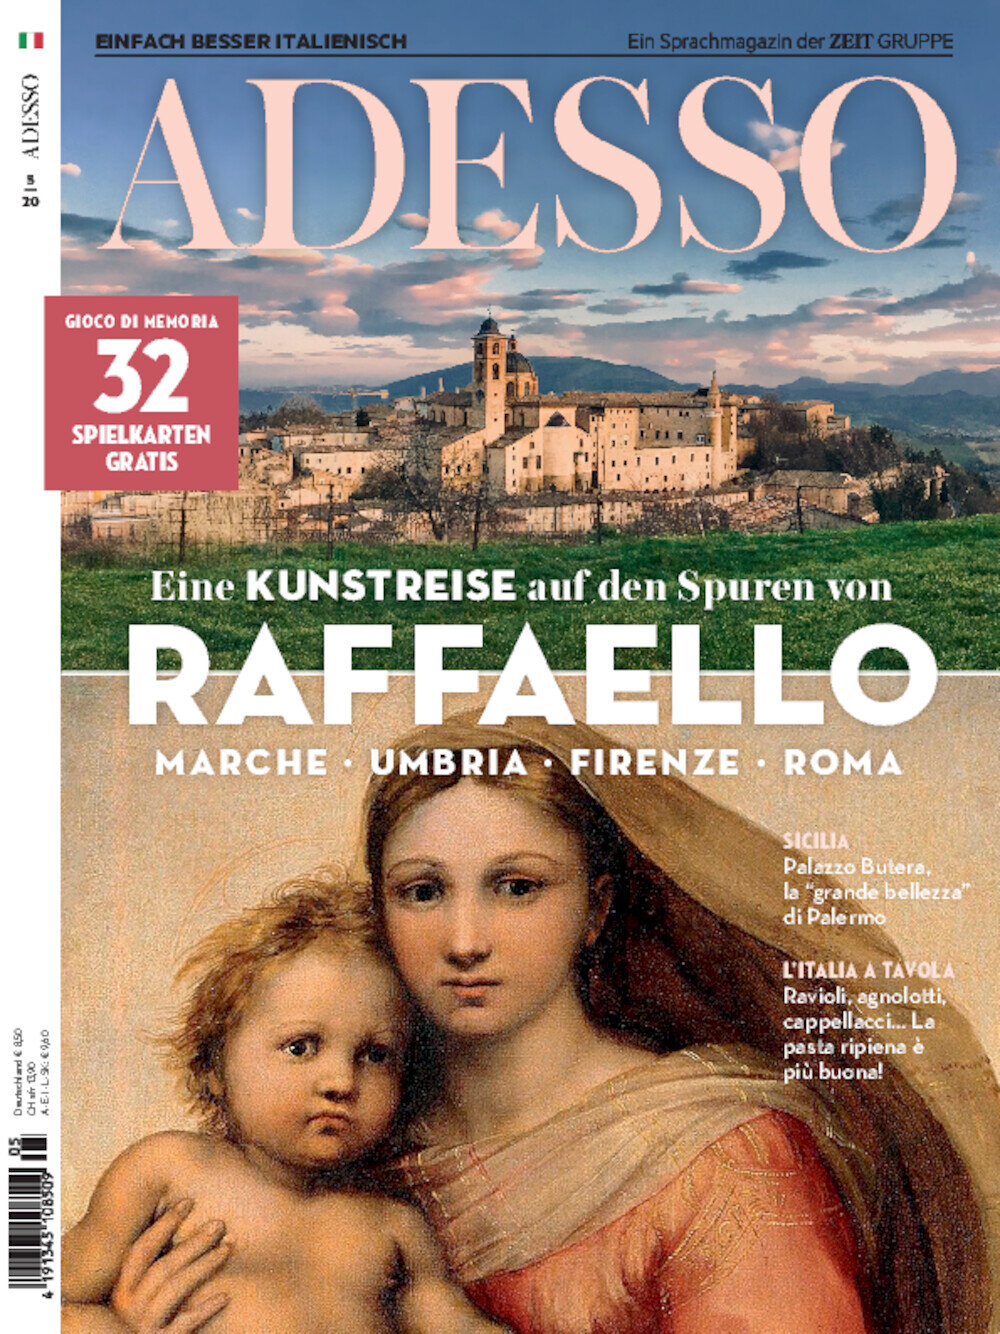 ADESSO eMagazine 05/2020